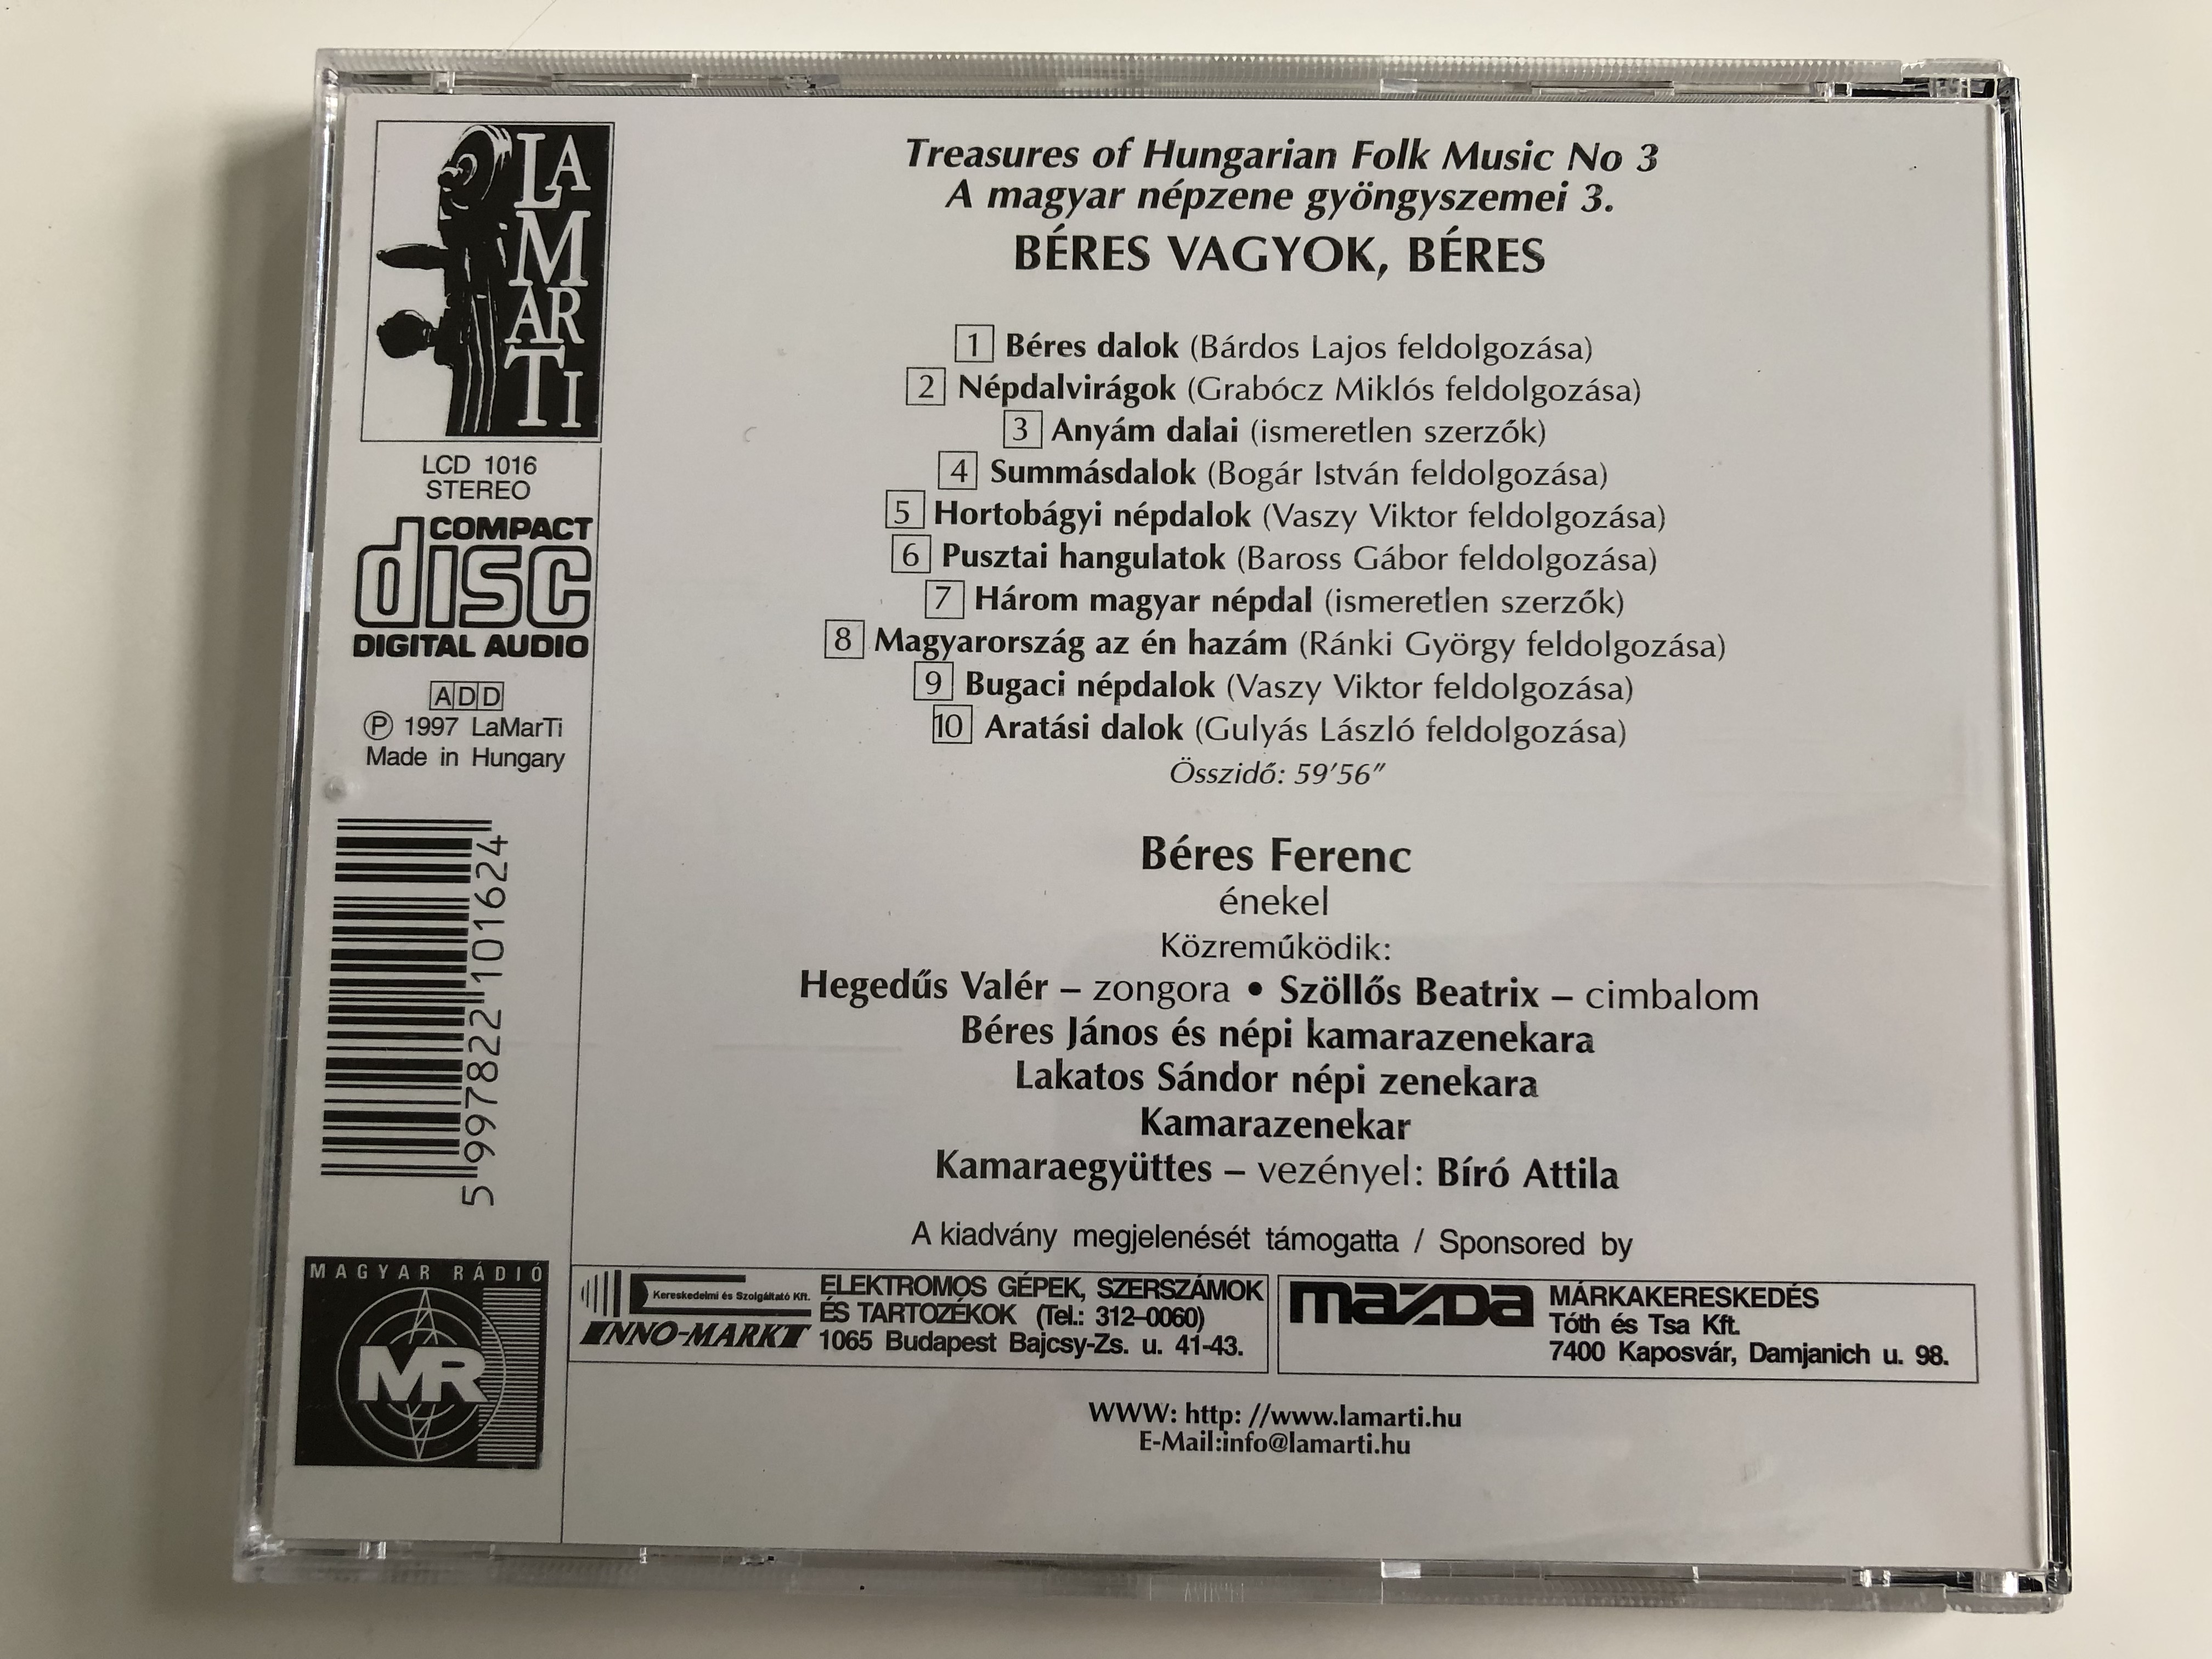 treasures-of-hungarian-folk-music-3.-a-magyar-nepzene-gyongyszemei-3.-beres-vagyok-beres-beres-ferenc-enekel-lamarti-audio-cd-stereo-1997-lcd-1016-7-.jpg